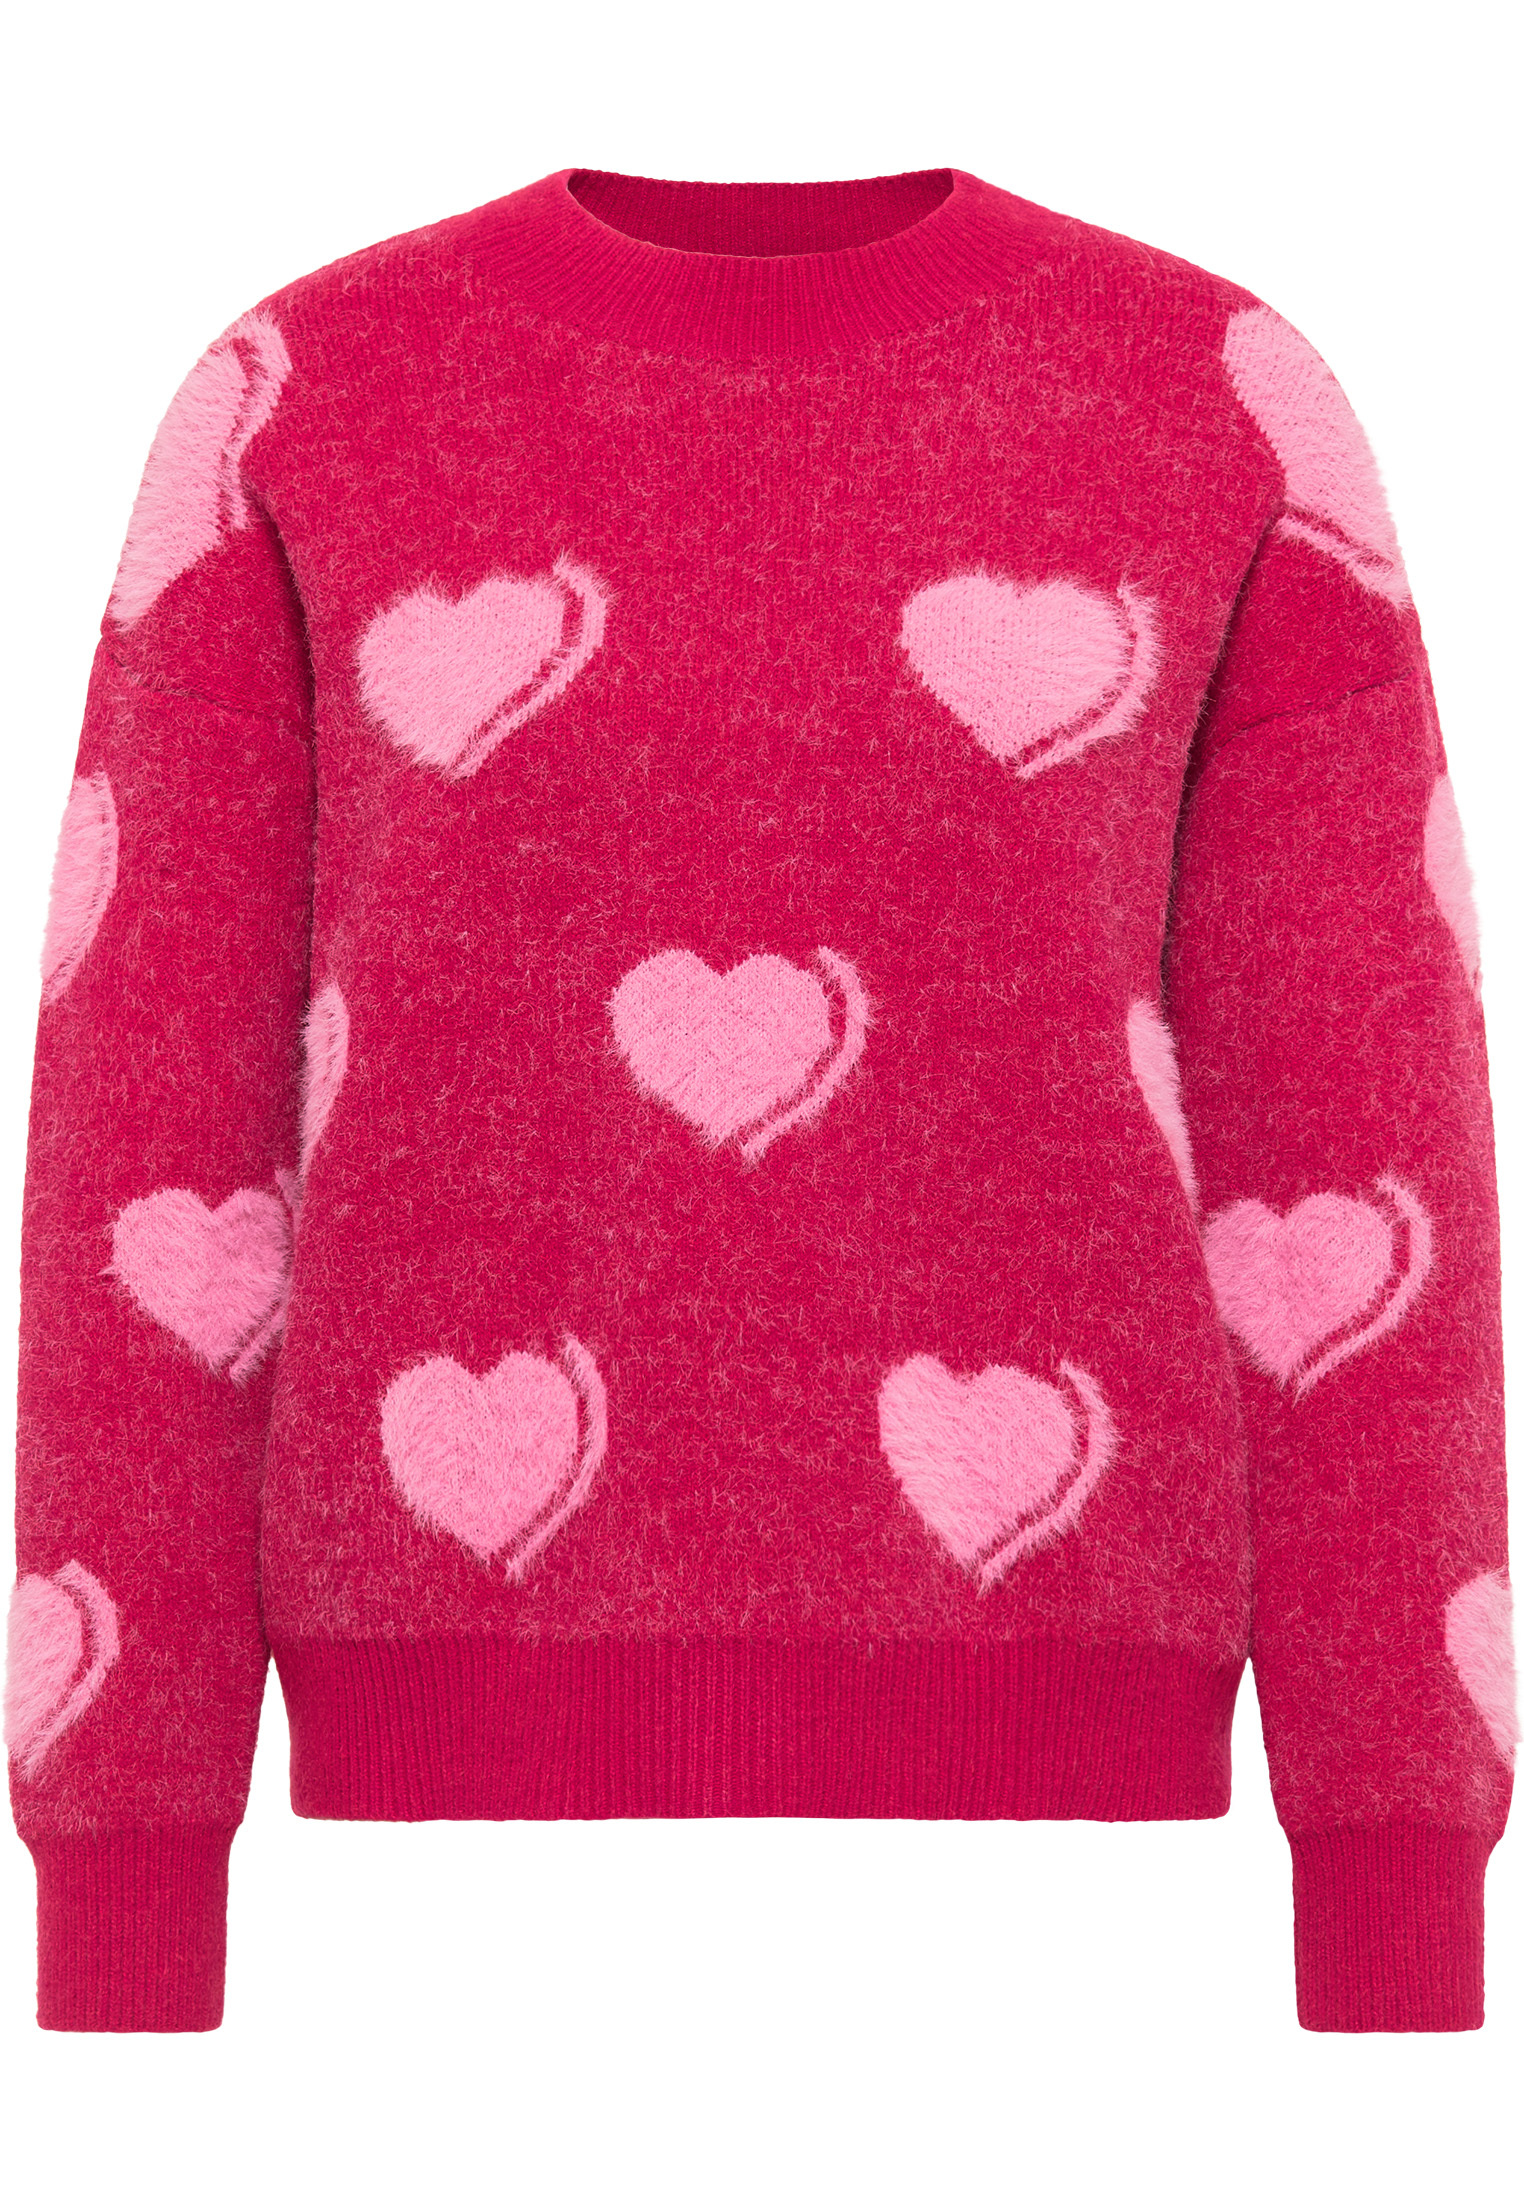 MYMO Sweter w kolorze Różowy Pudrowy, Różowym 